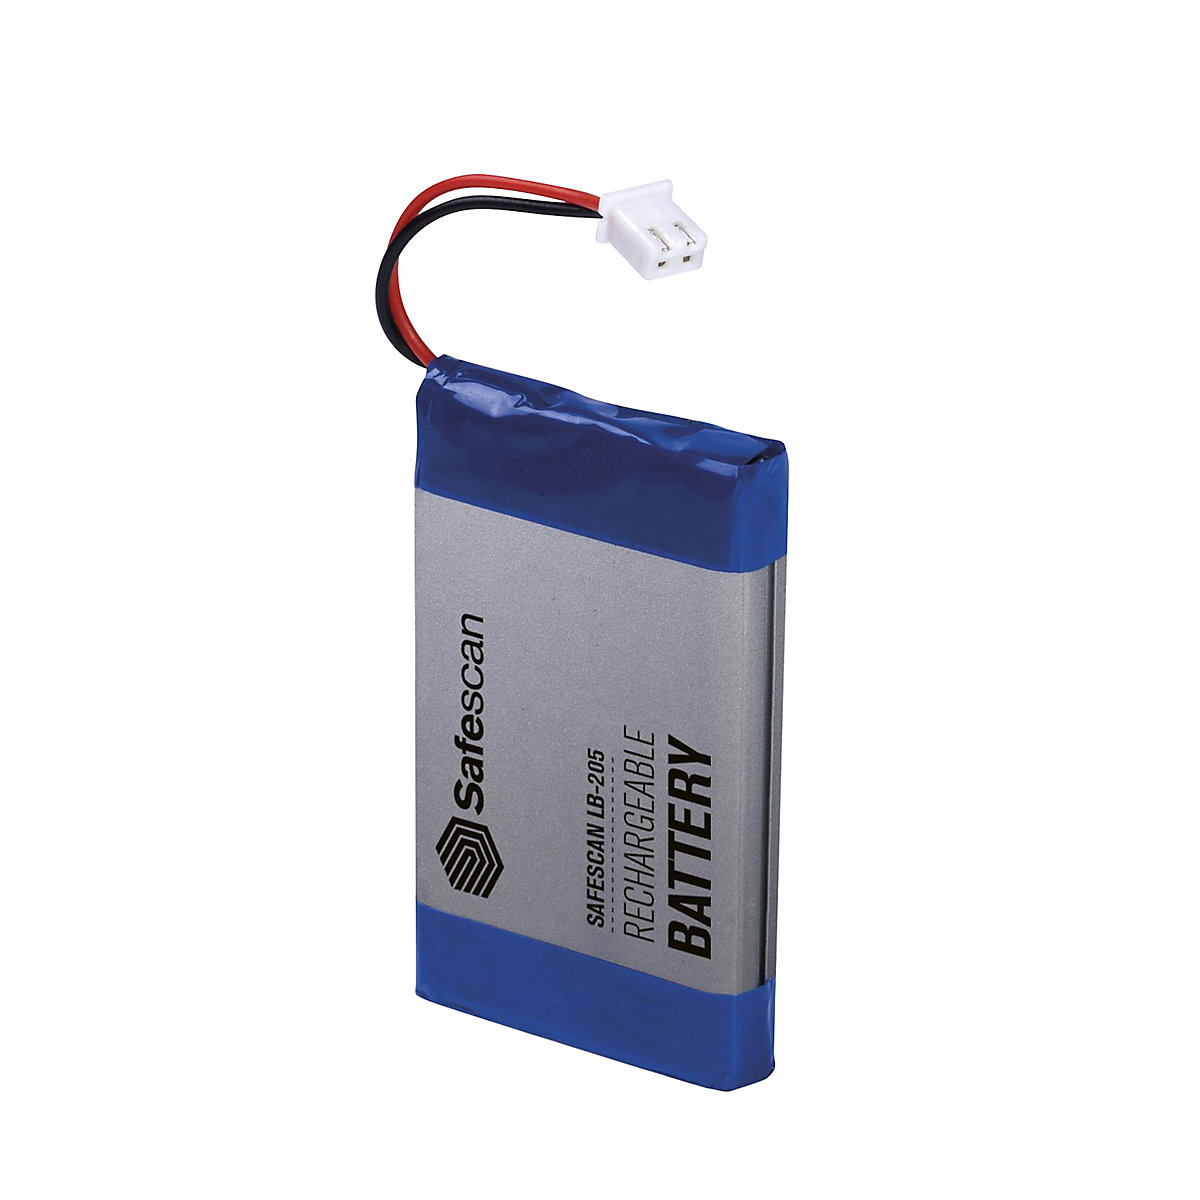 Dobíjecí baterie – Safescan